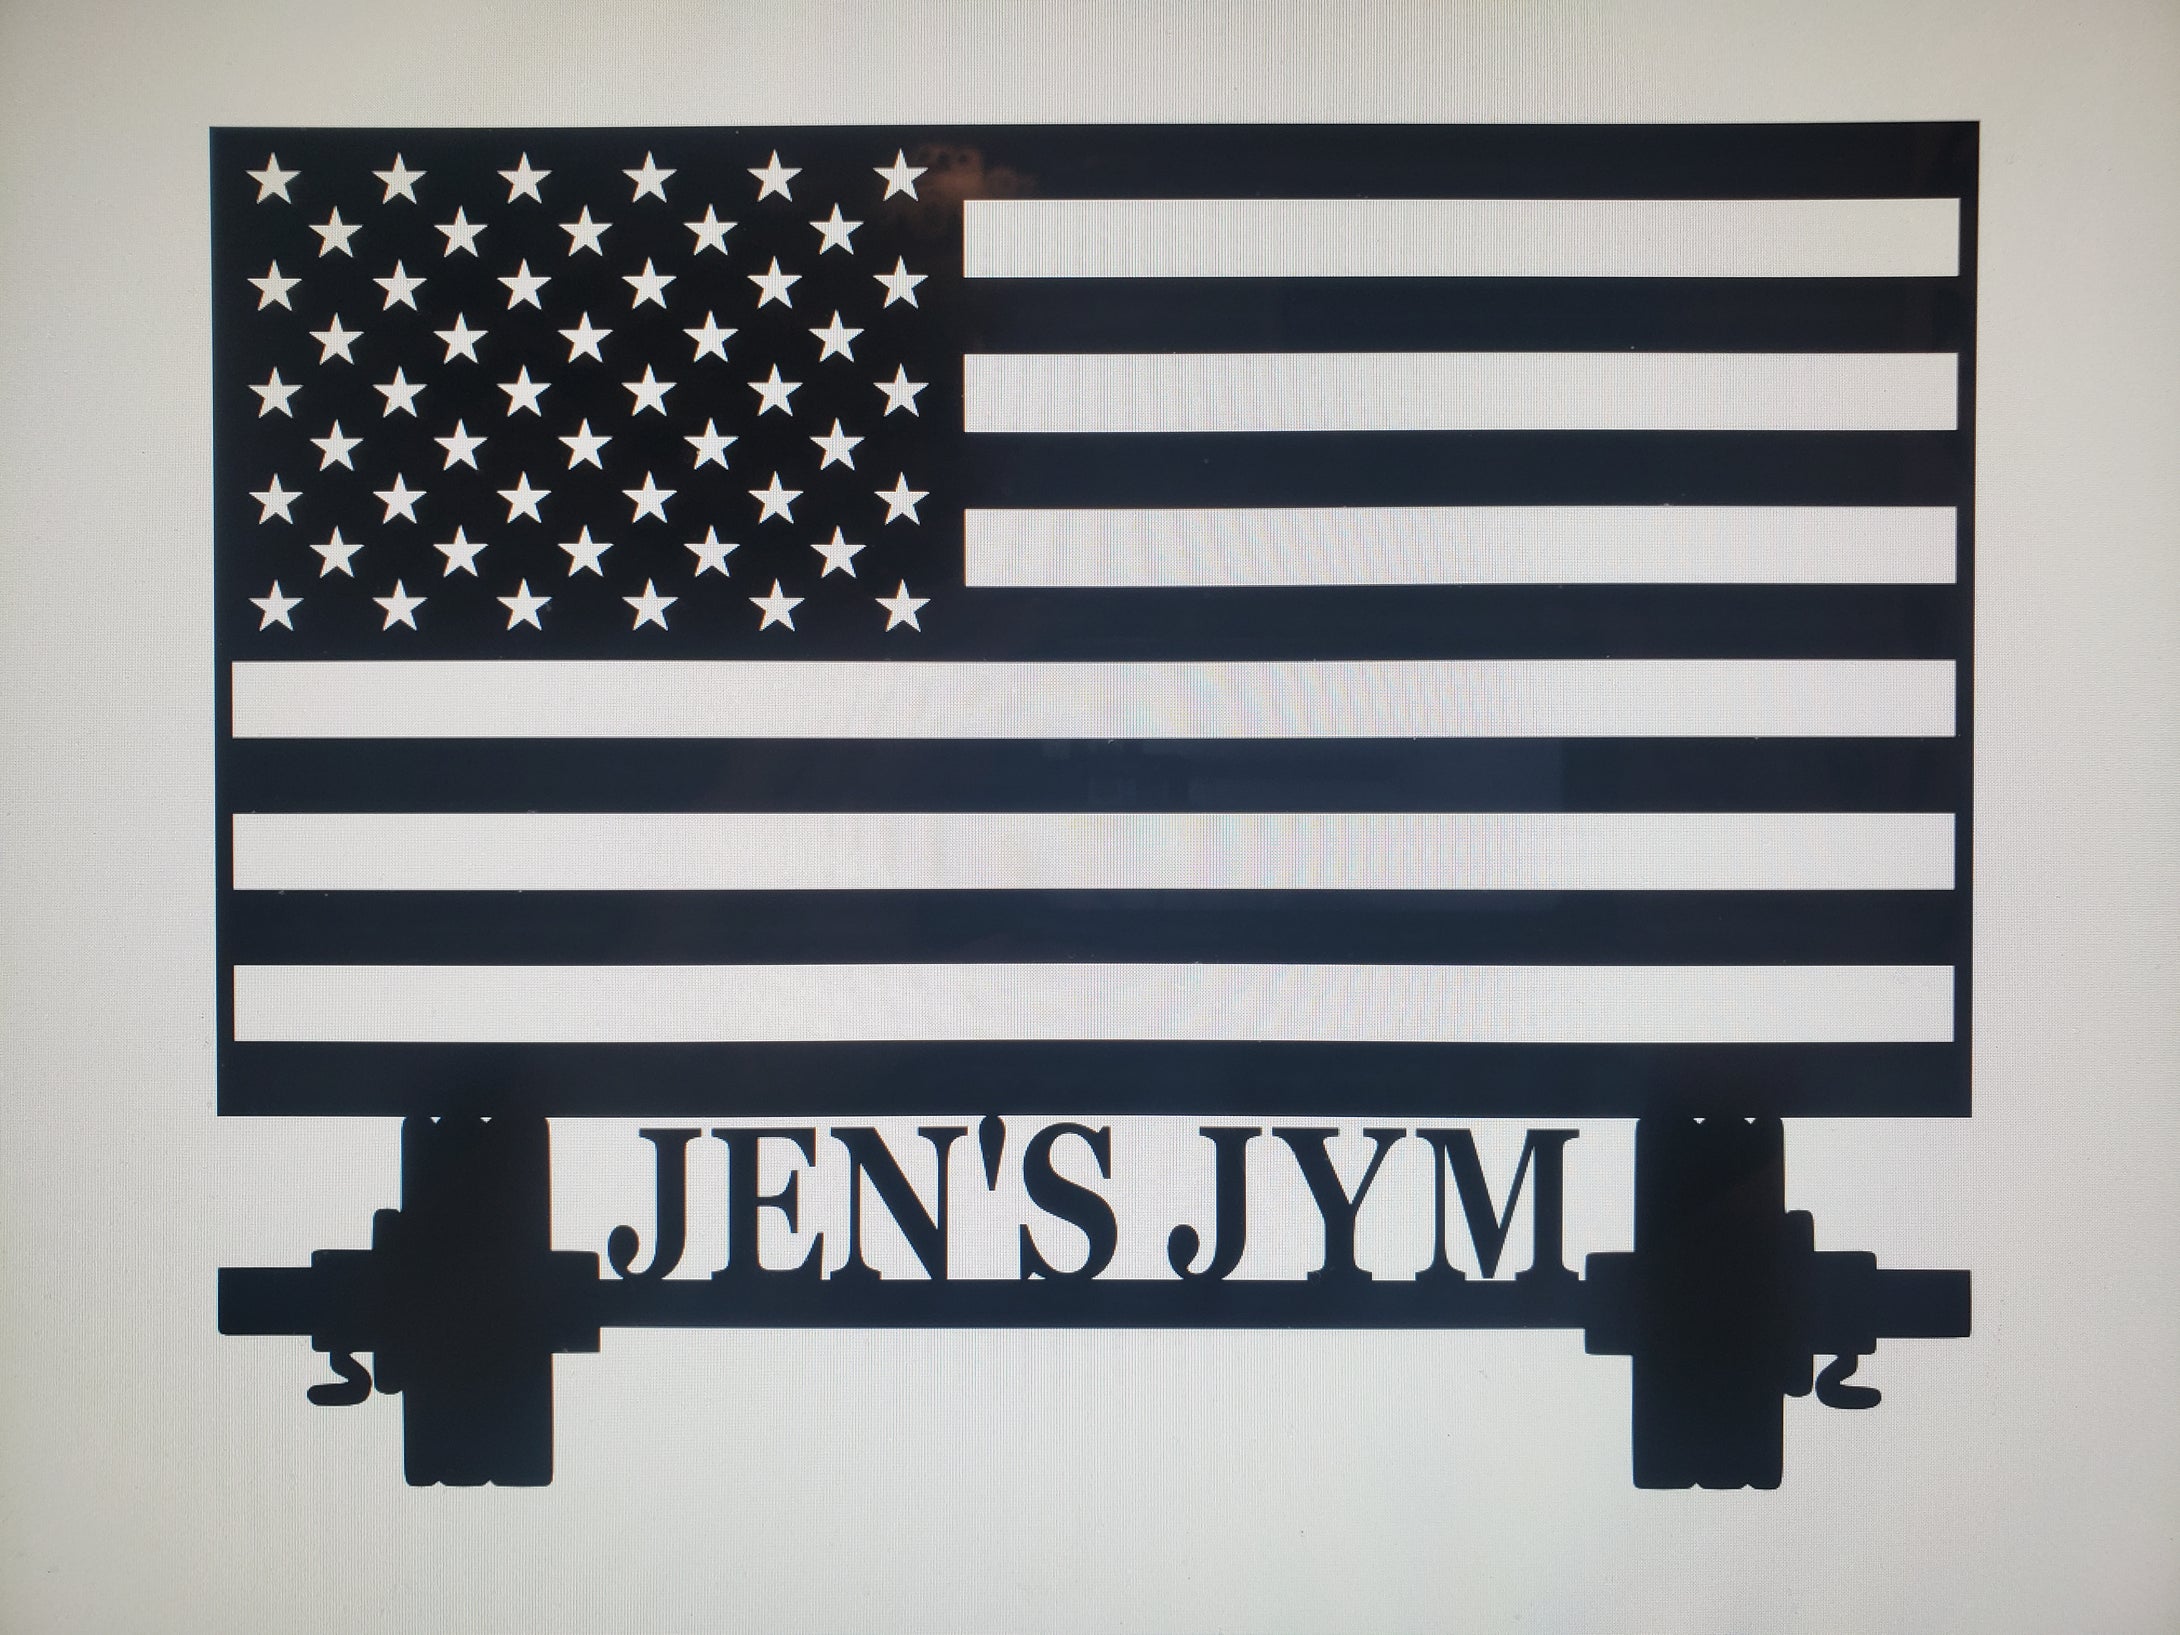 Jen's Jym